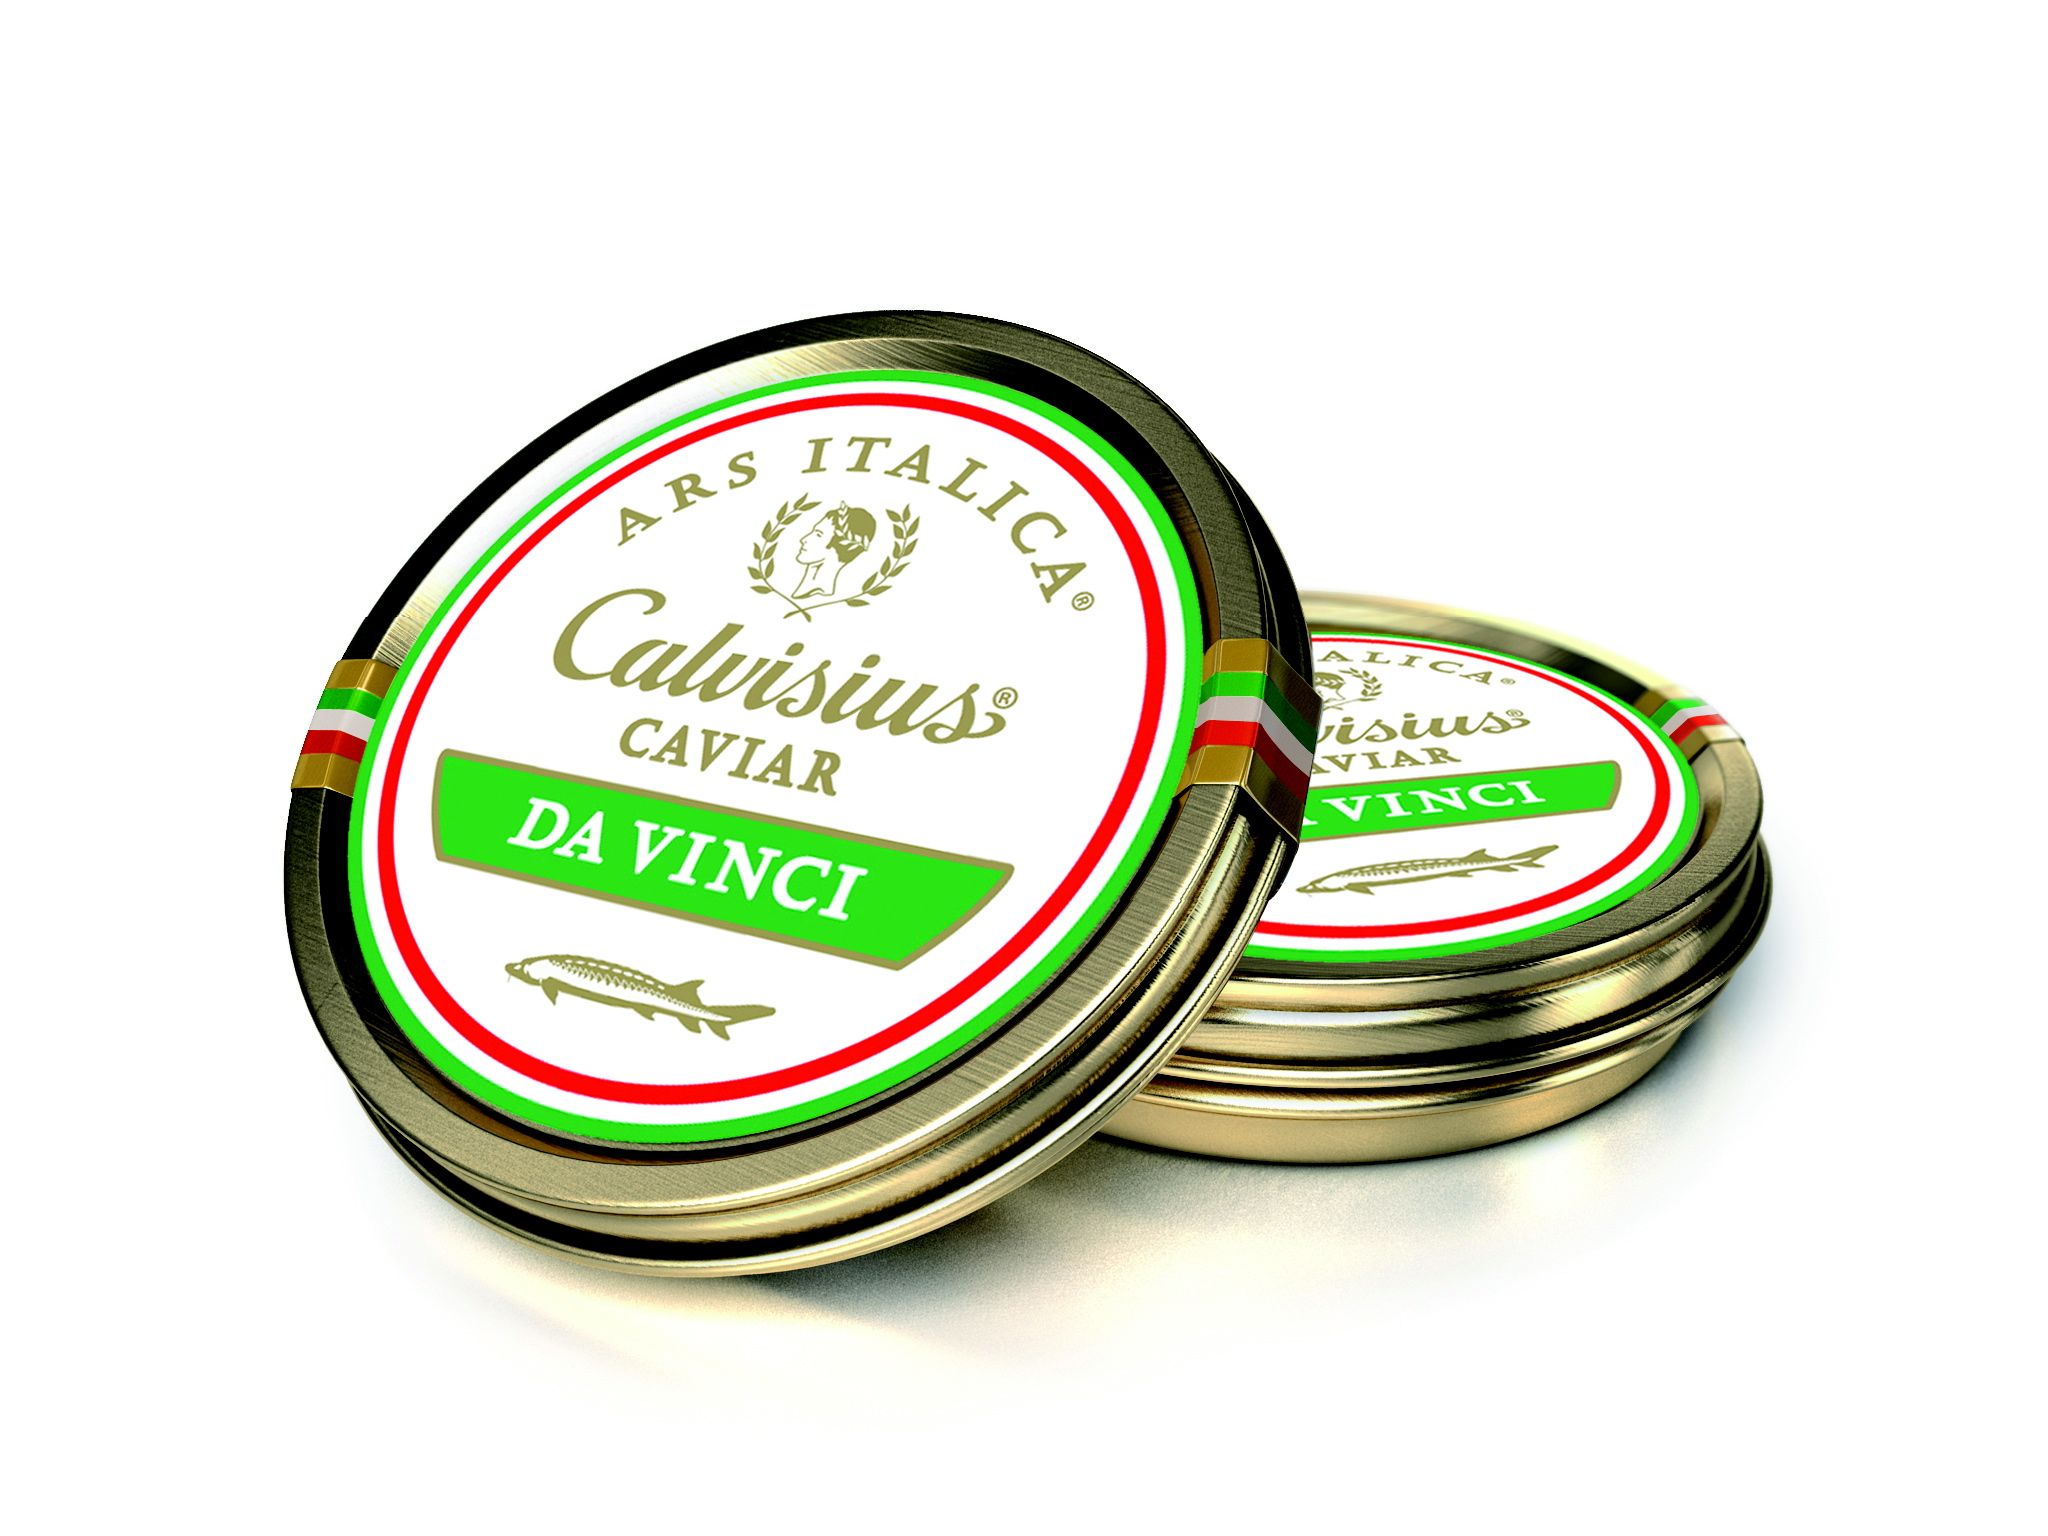 Caviar Calvisius da Vinci 30g